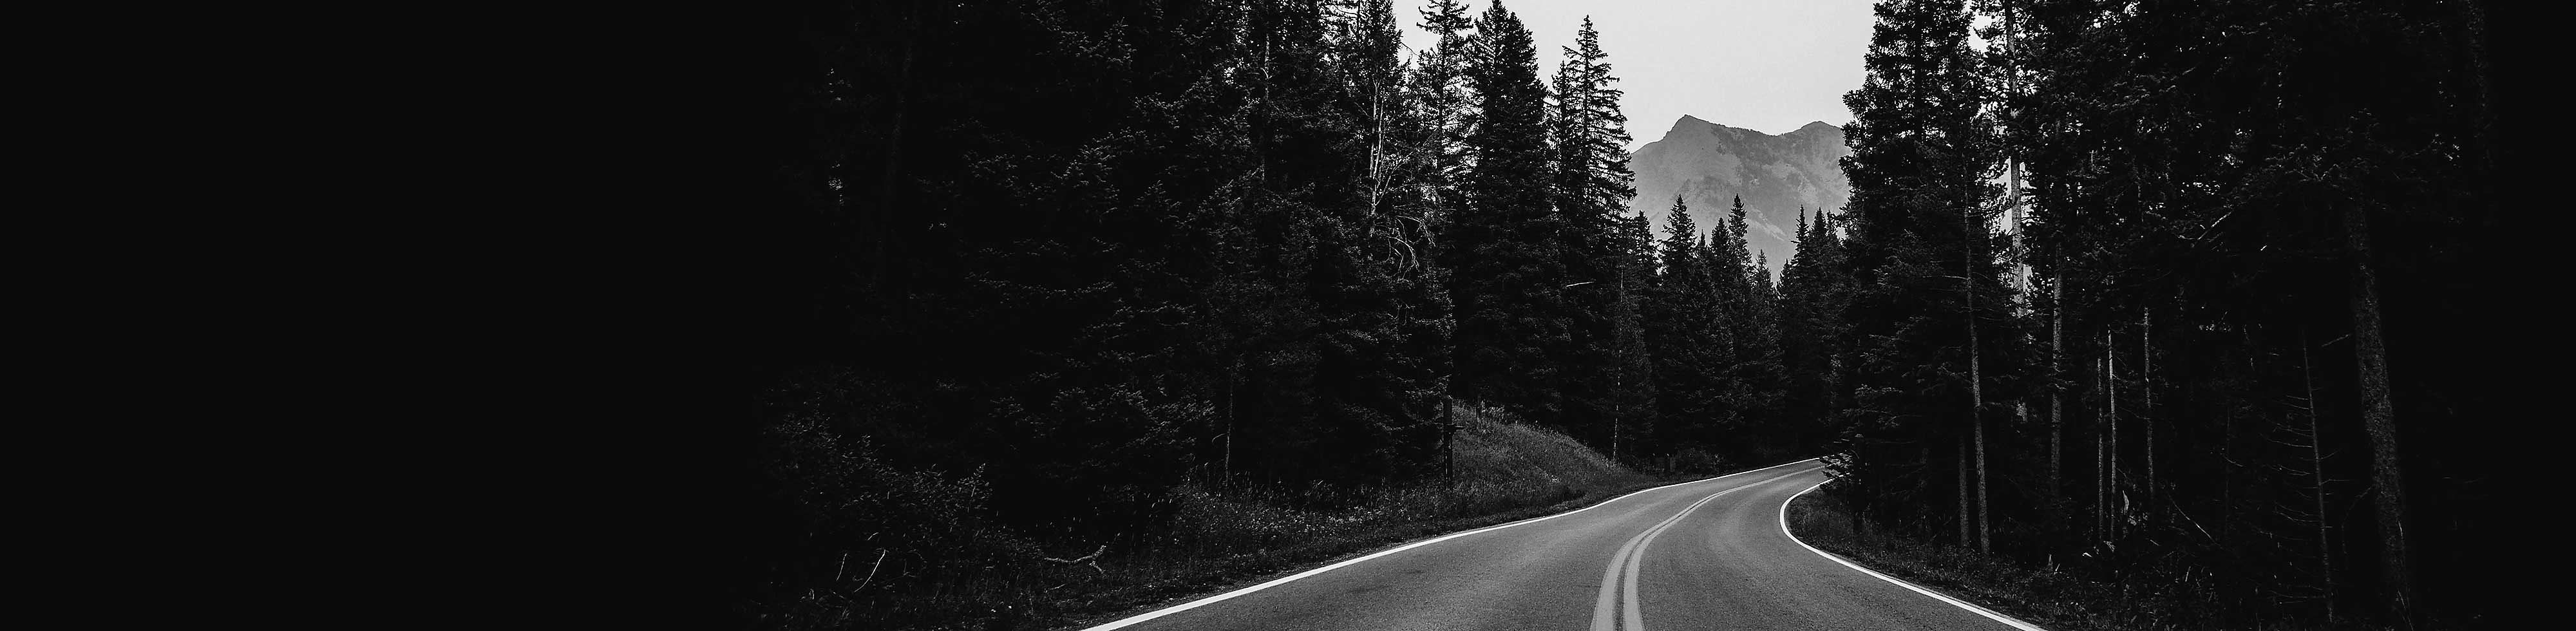 Imagem em preto e branco de uma estrada curva cercada por árvores com uma montanha em fundo